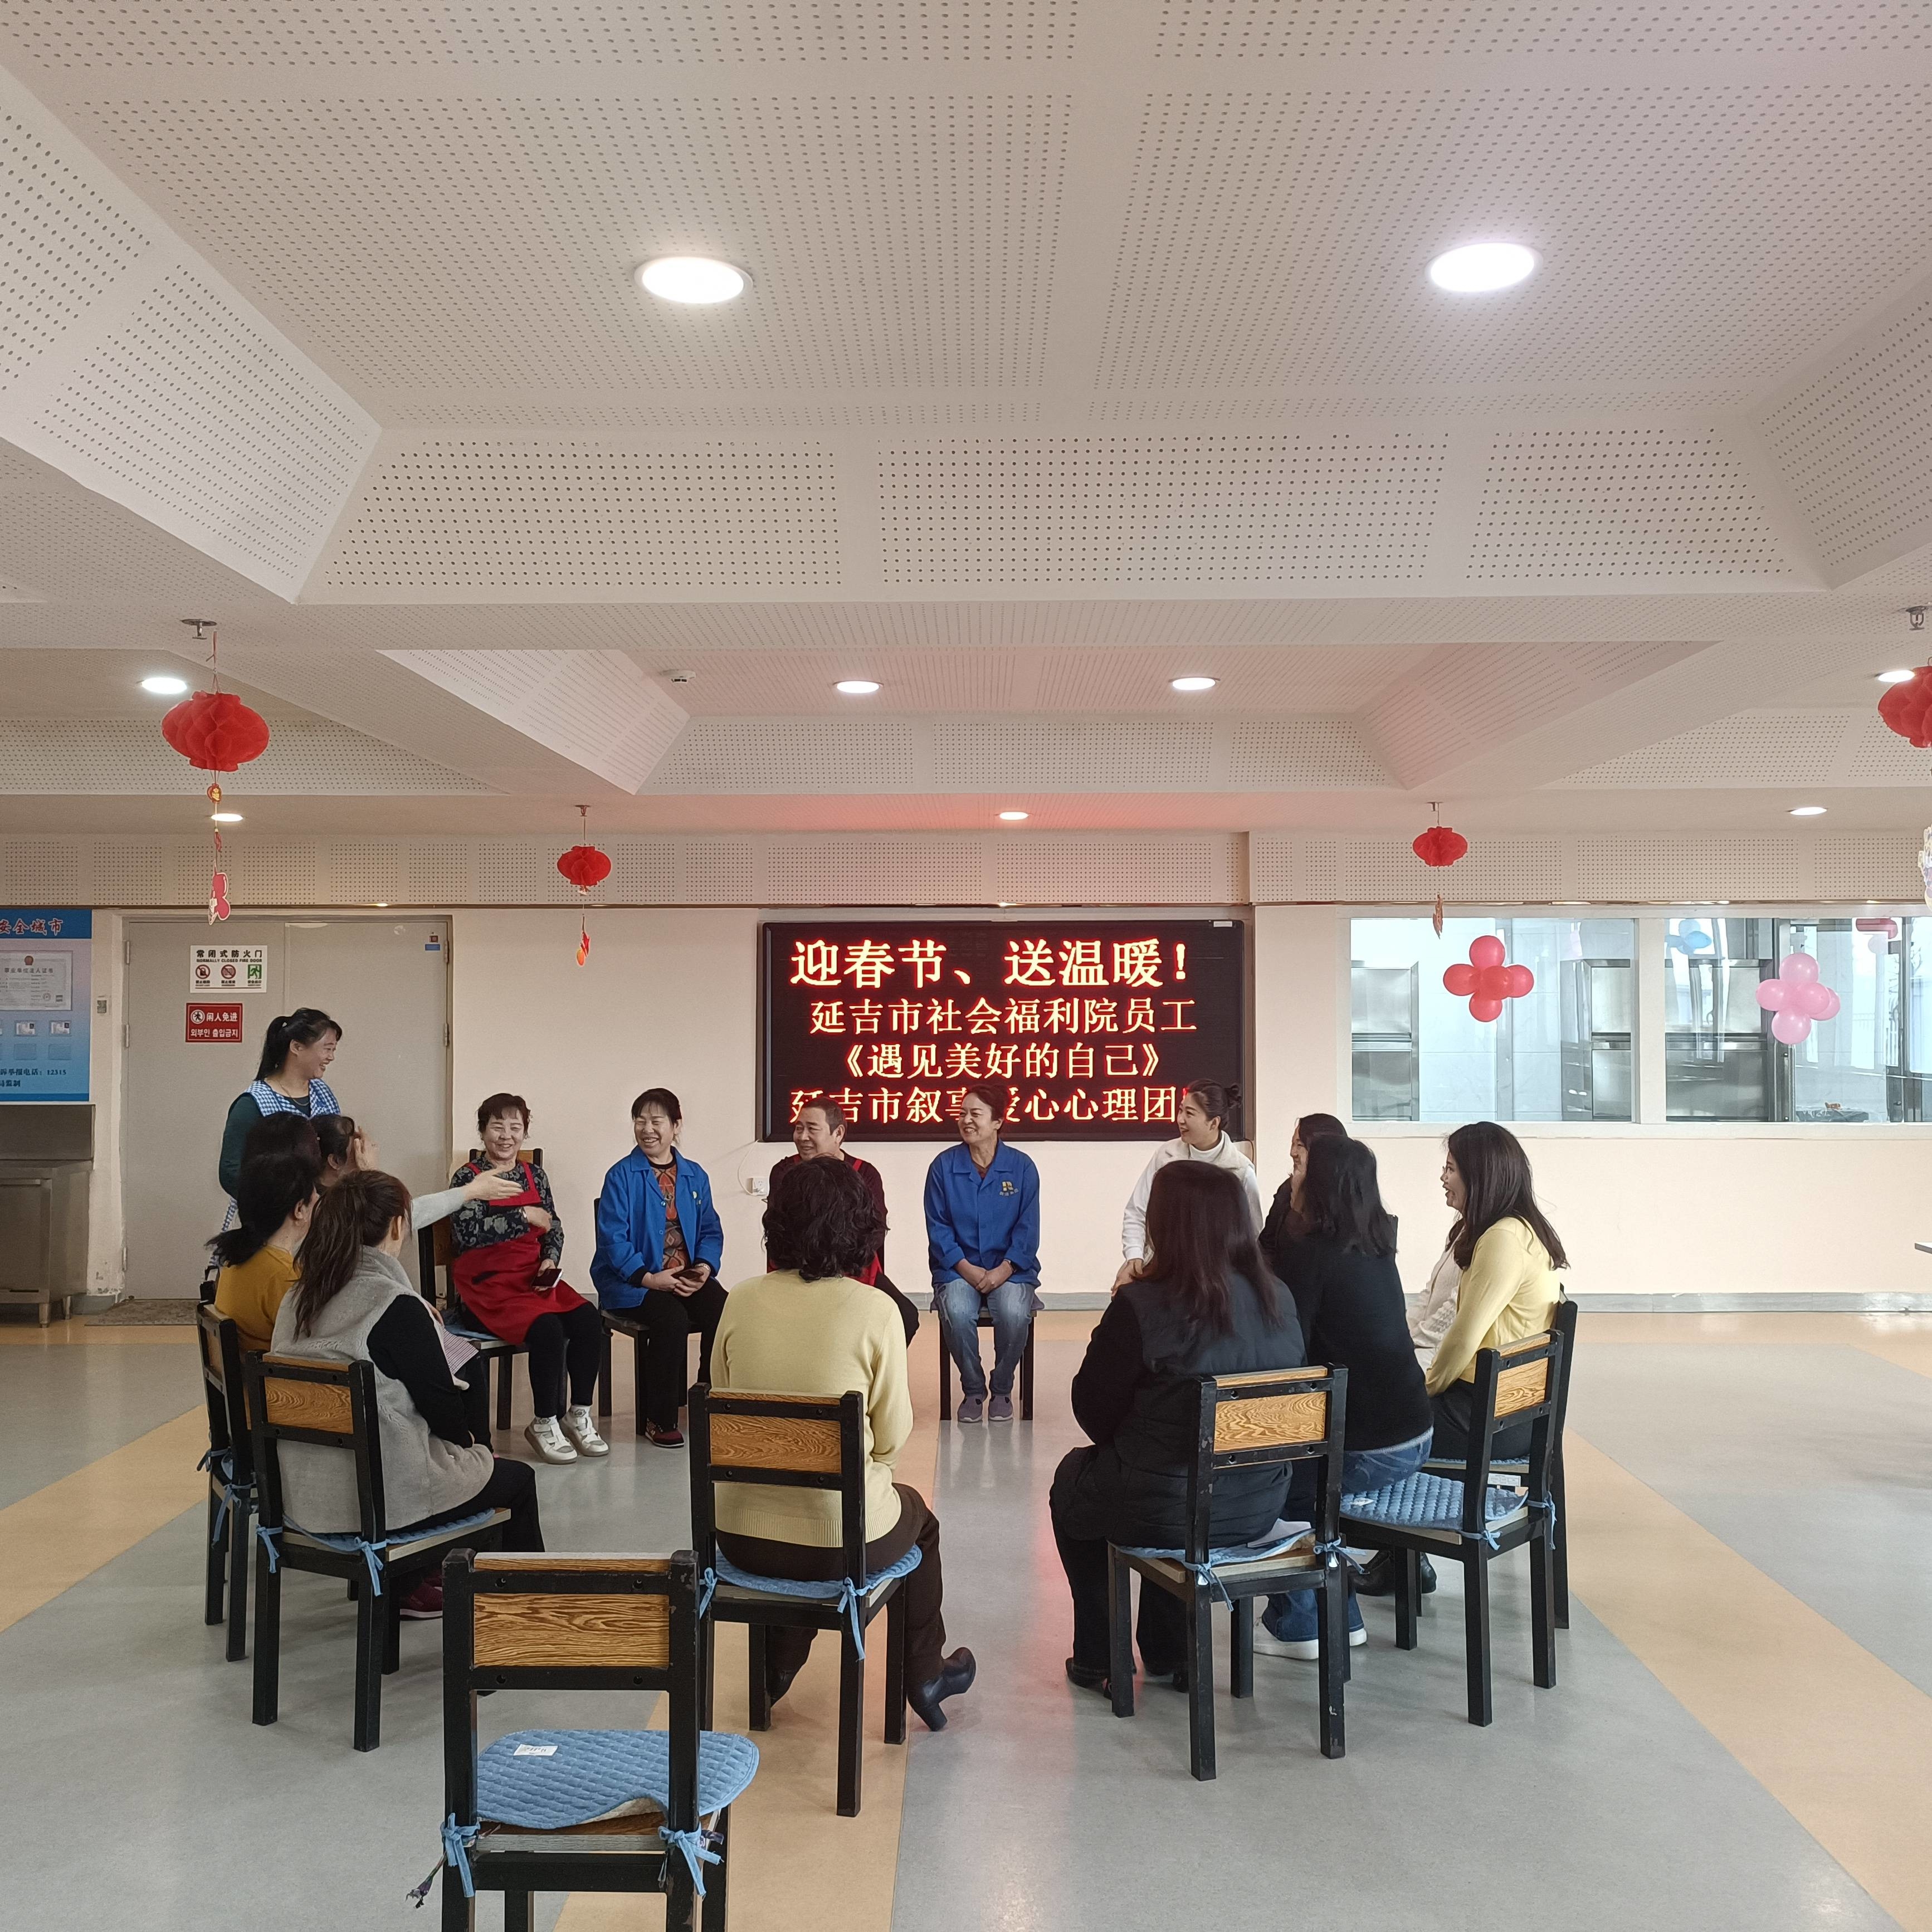 延吉市社会福利院开展员工心理疏导活动